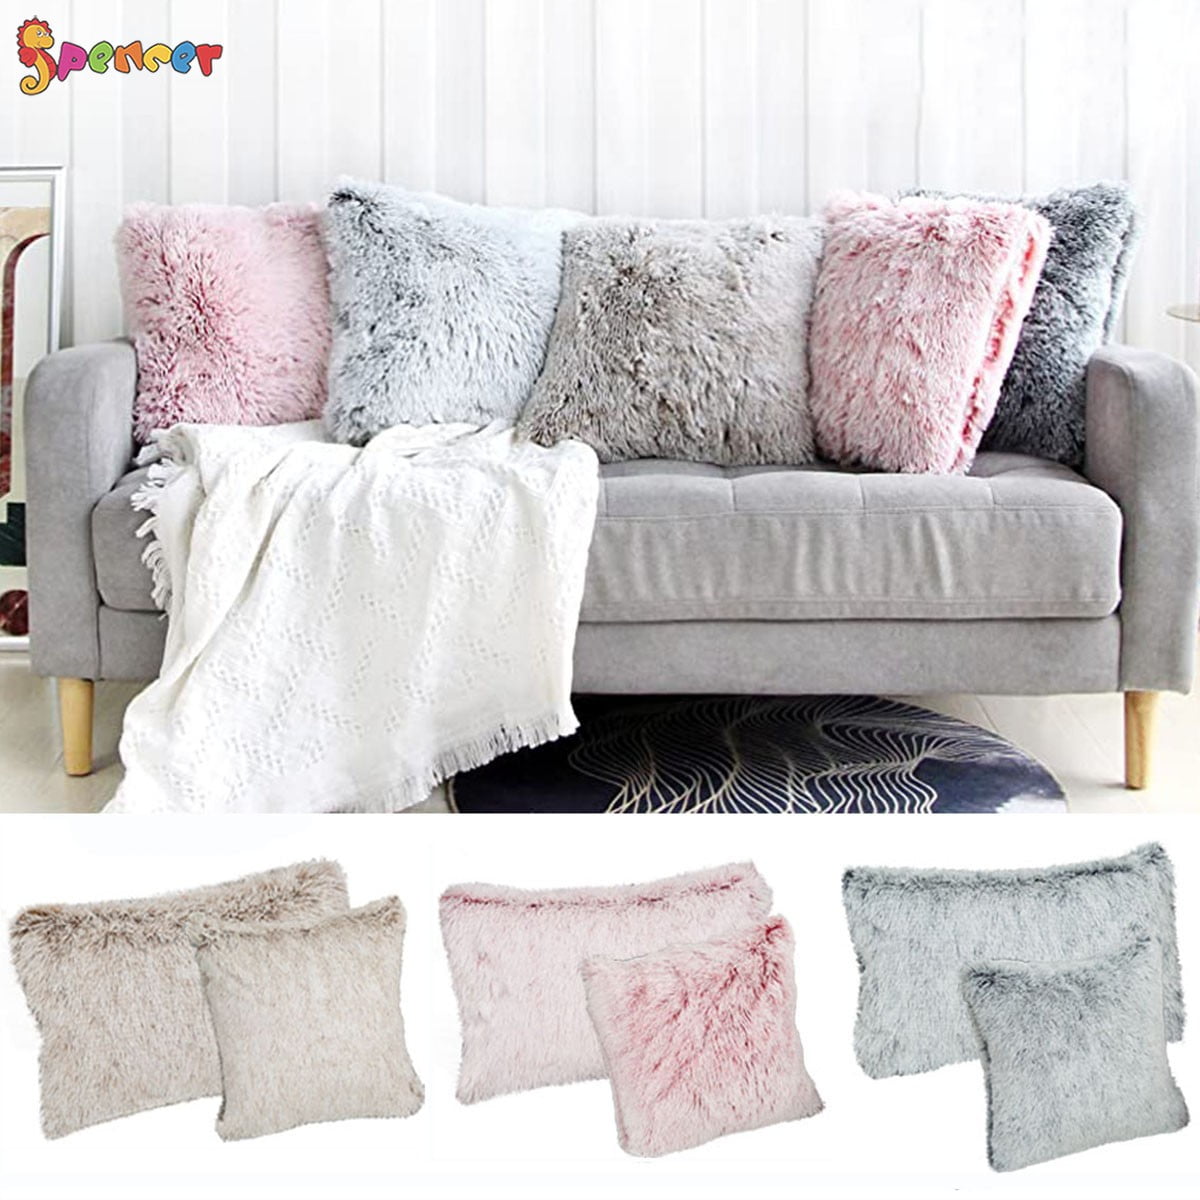 Fluffy Fur Plush Pillow Case Shaggy Home Sofa Decor Soft Cushion Cover Throw Hot 